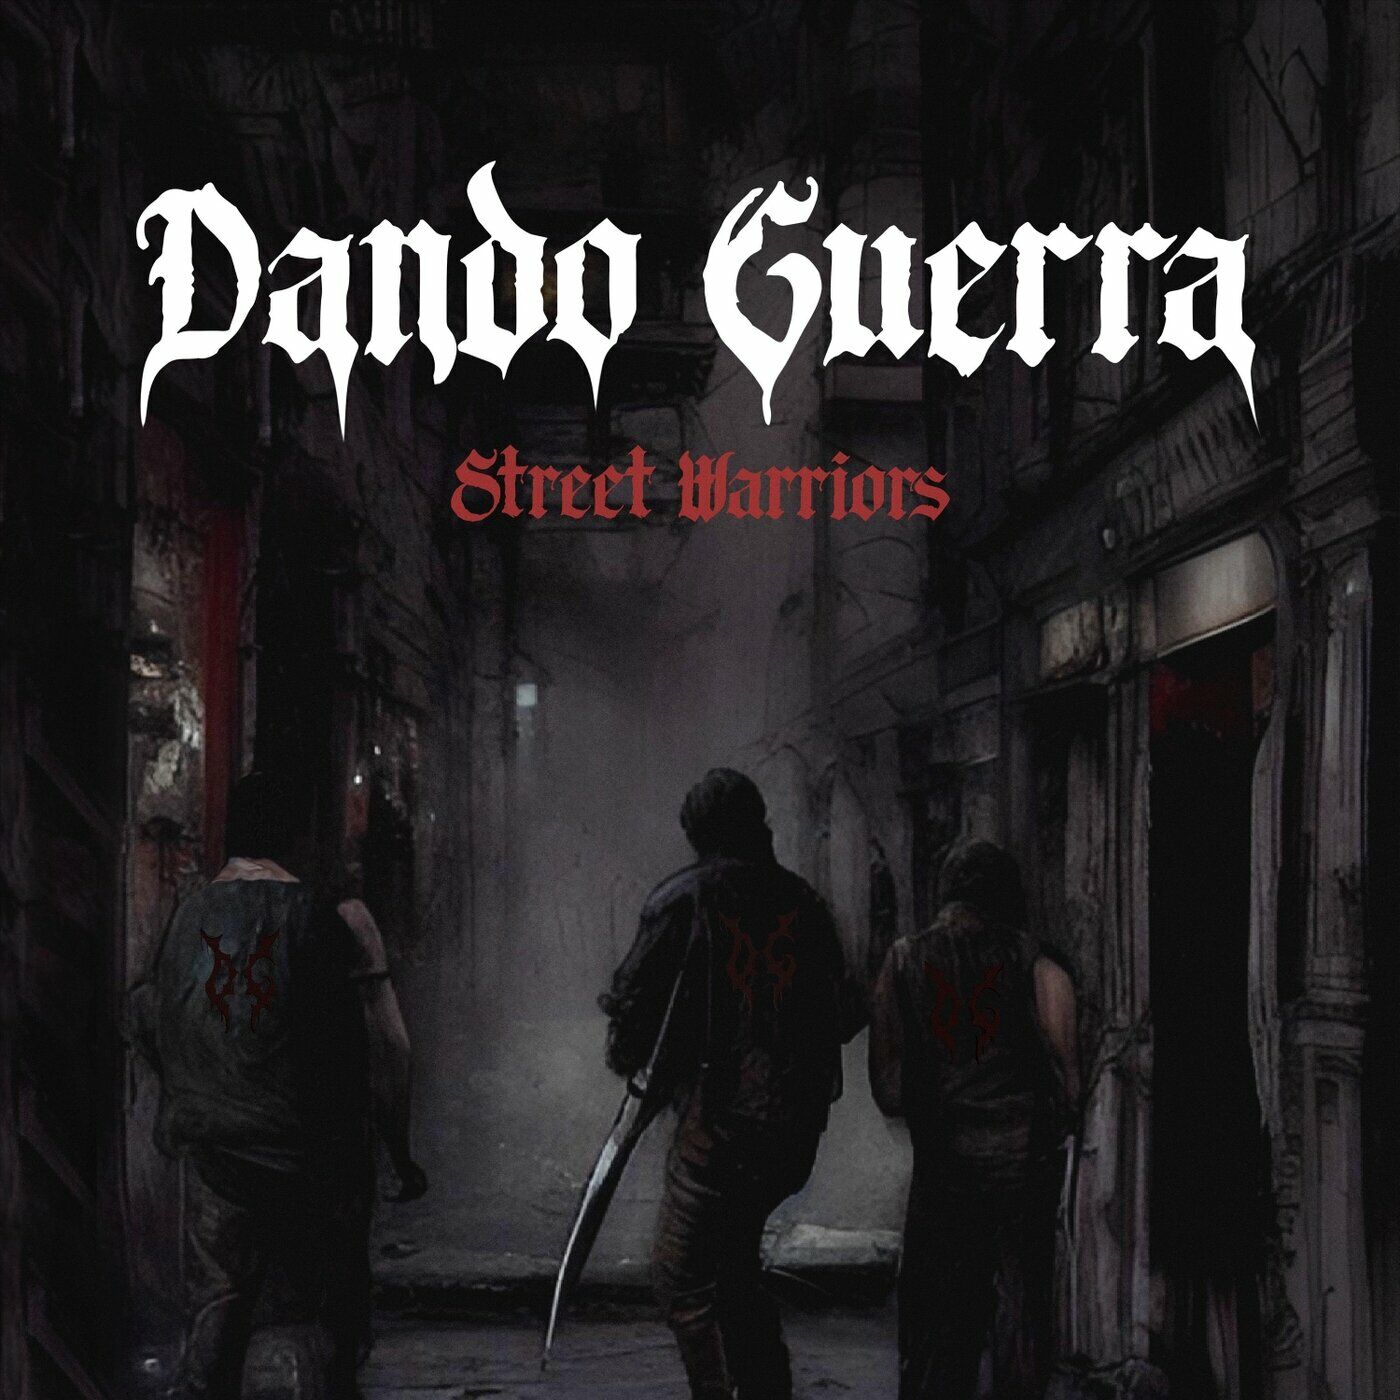 Street warriors